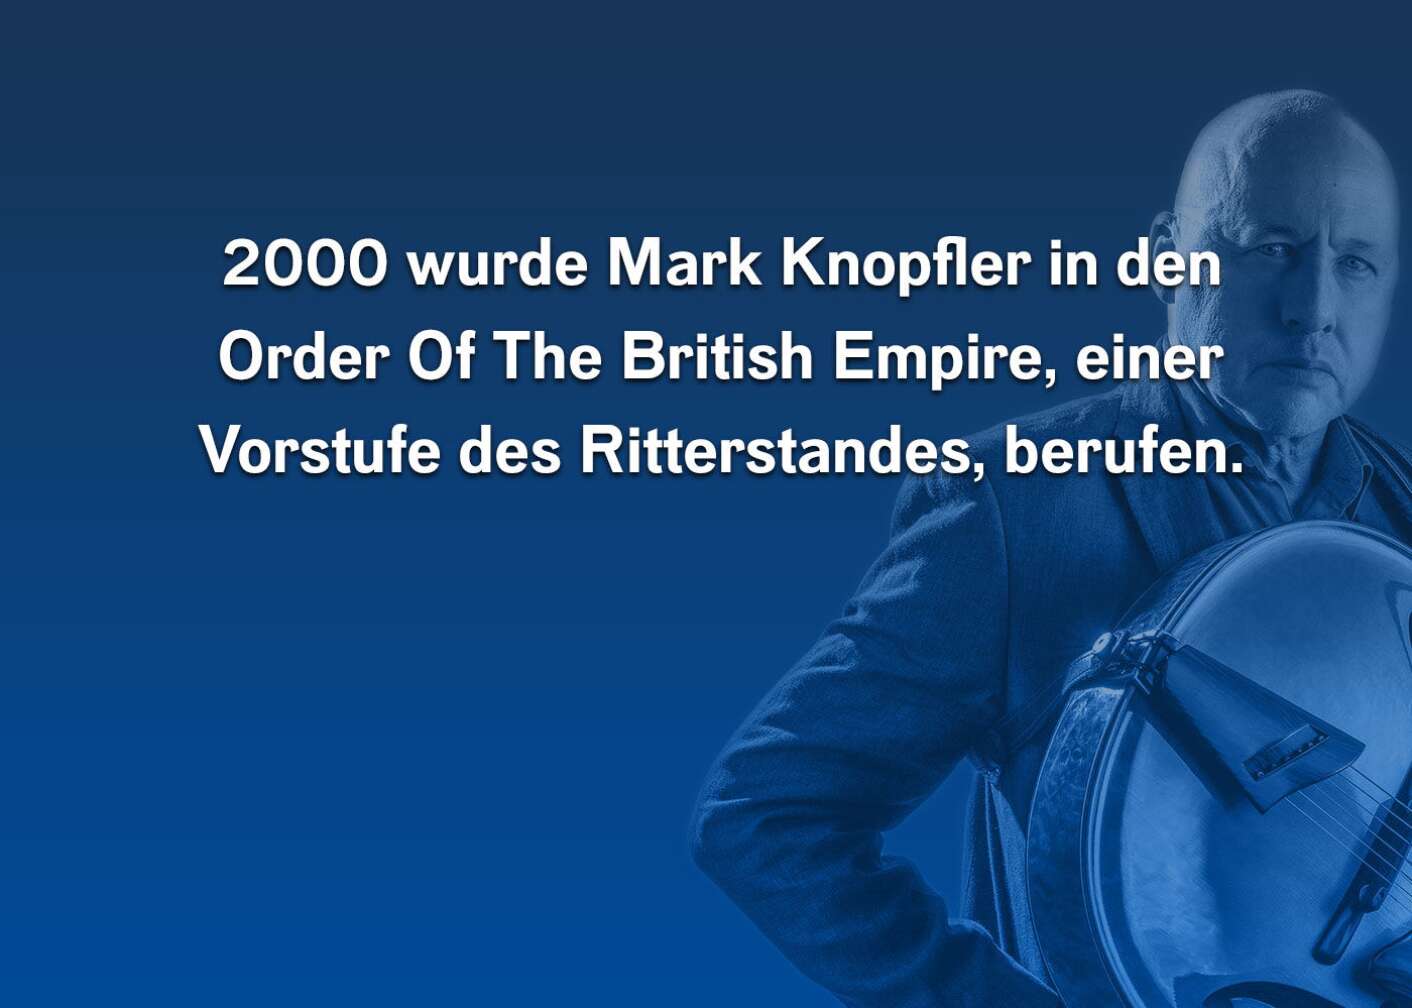 Fun Facts über Mark Knopfler